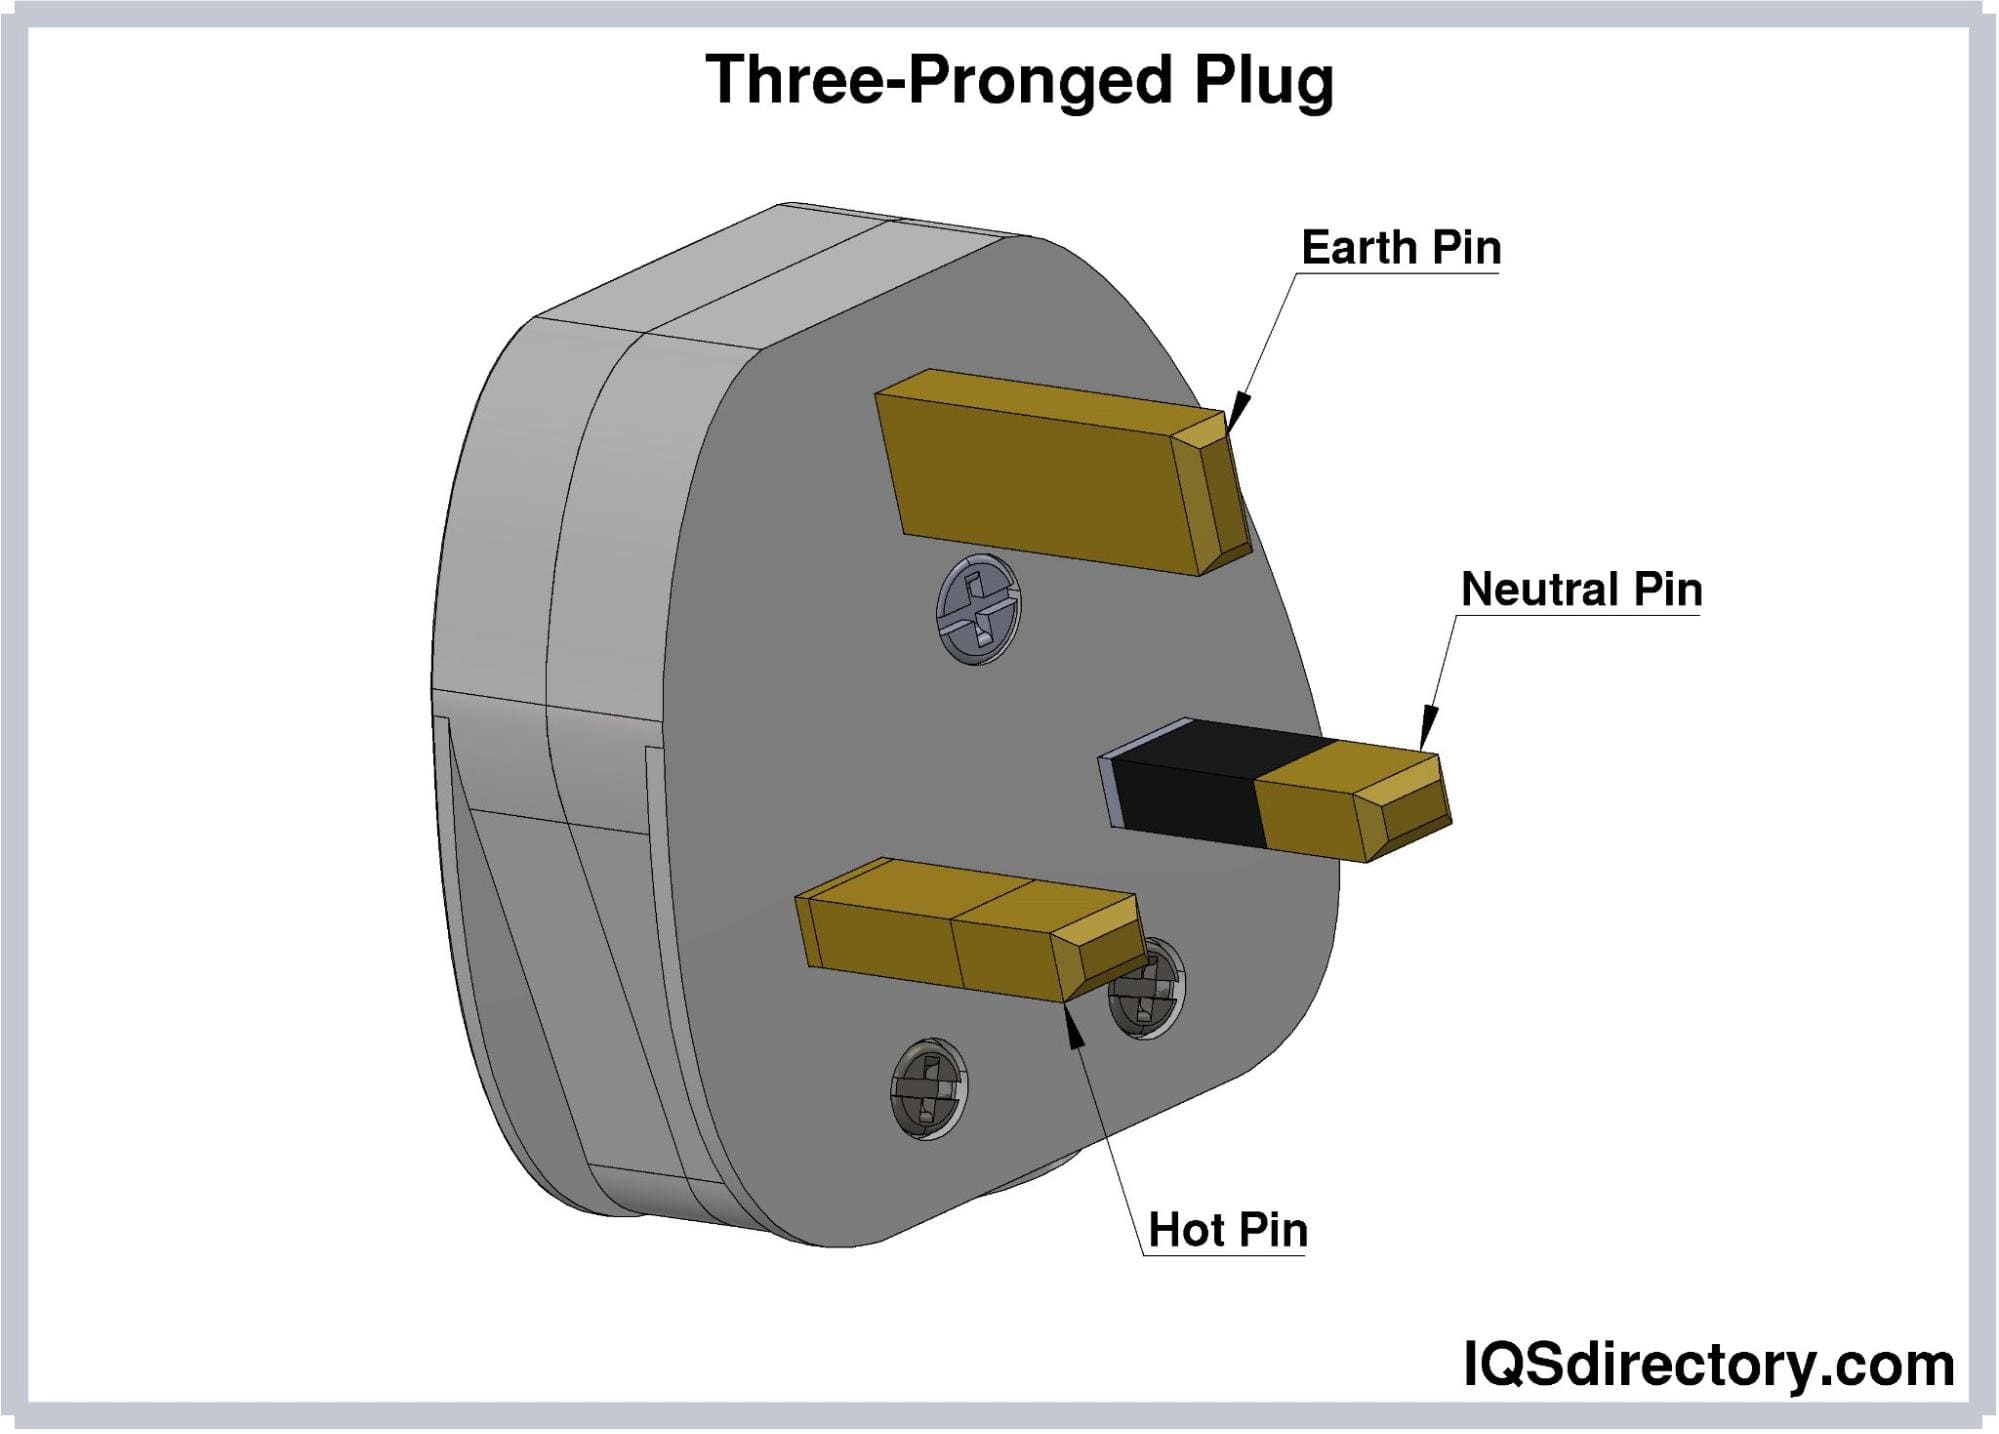 Three-Pronged Plug